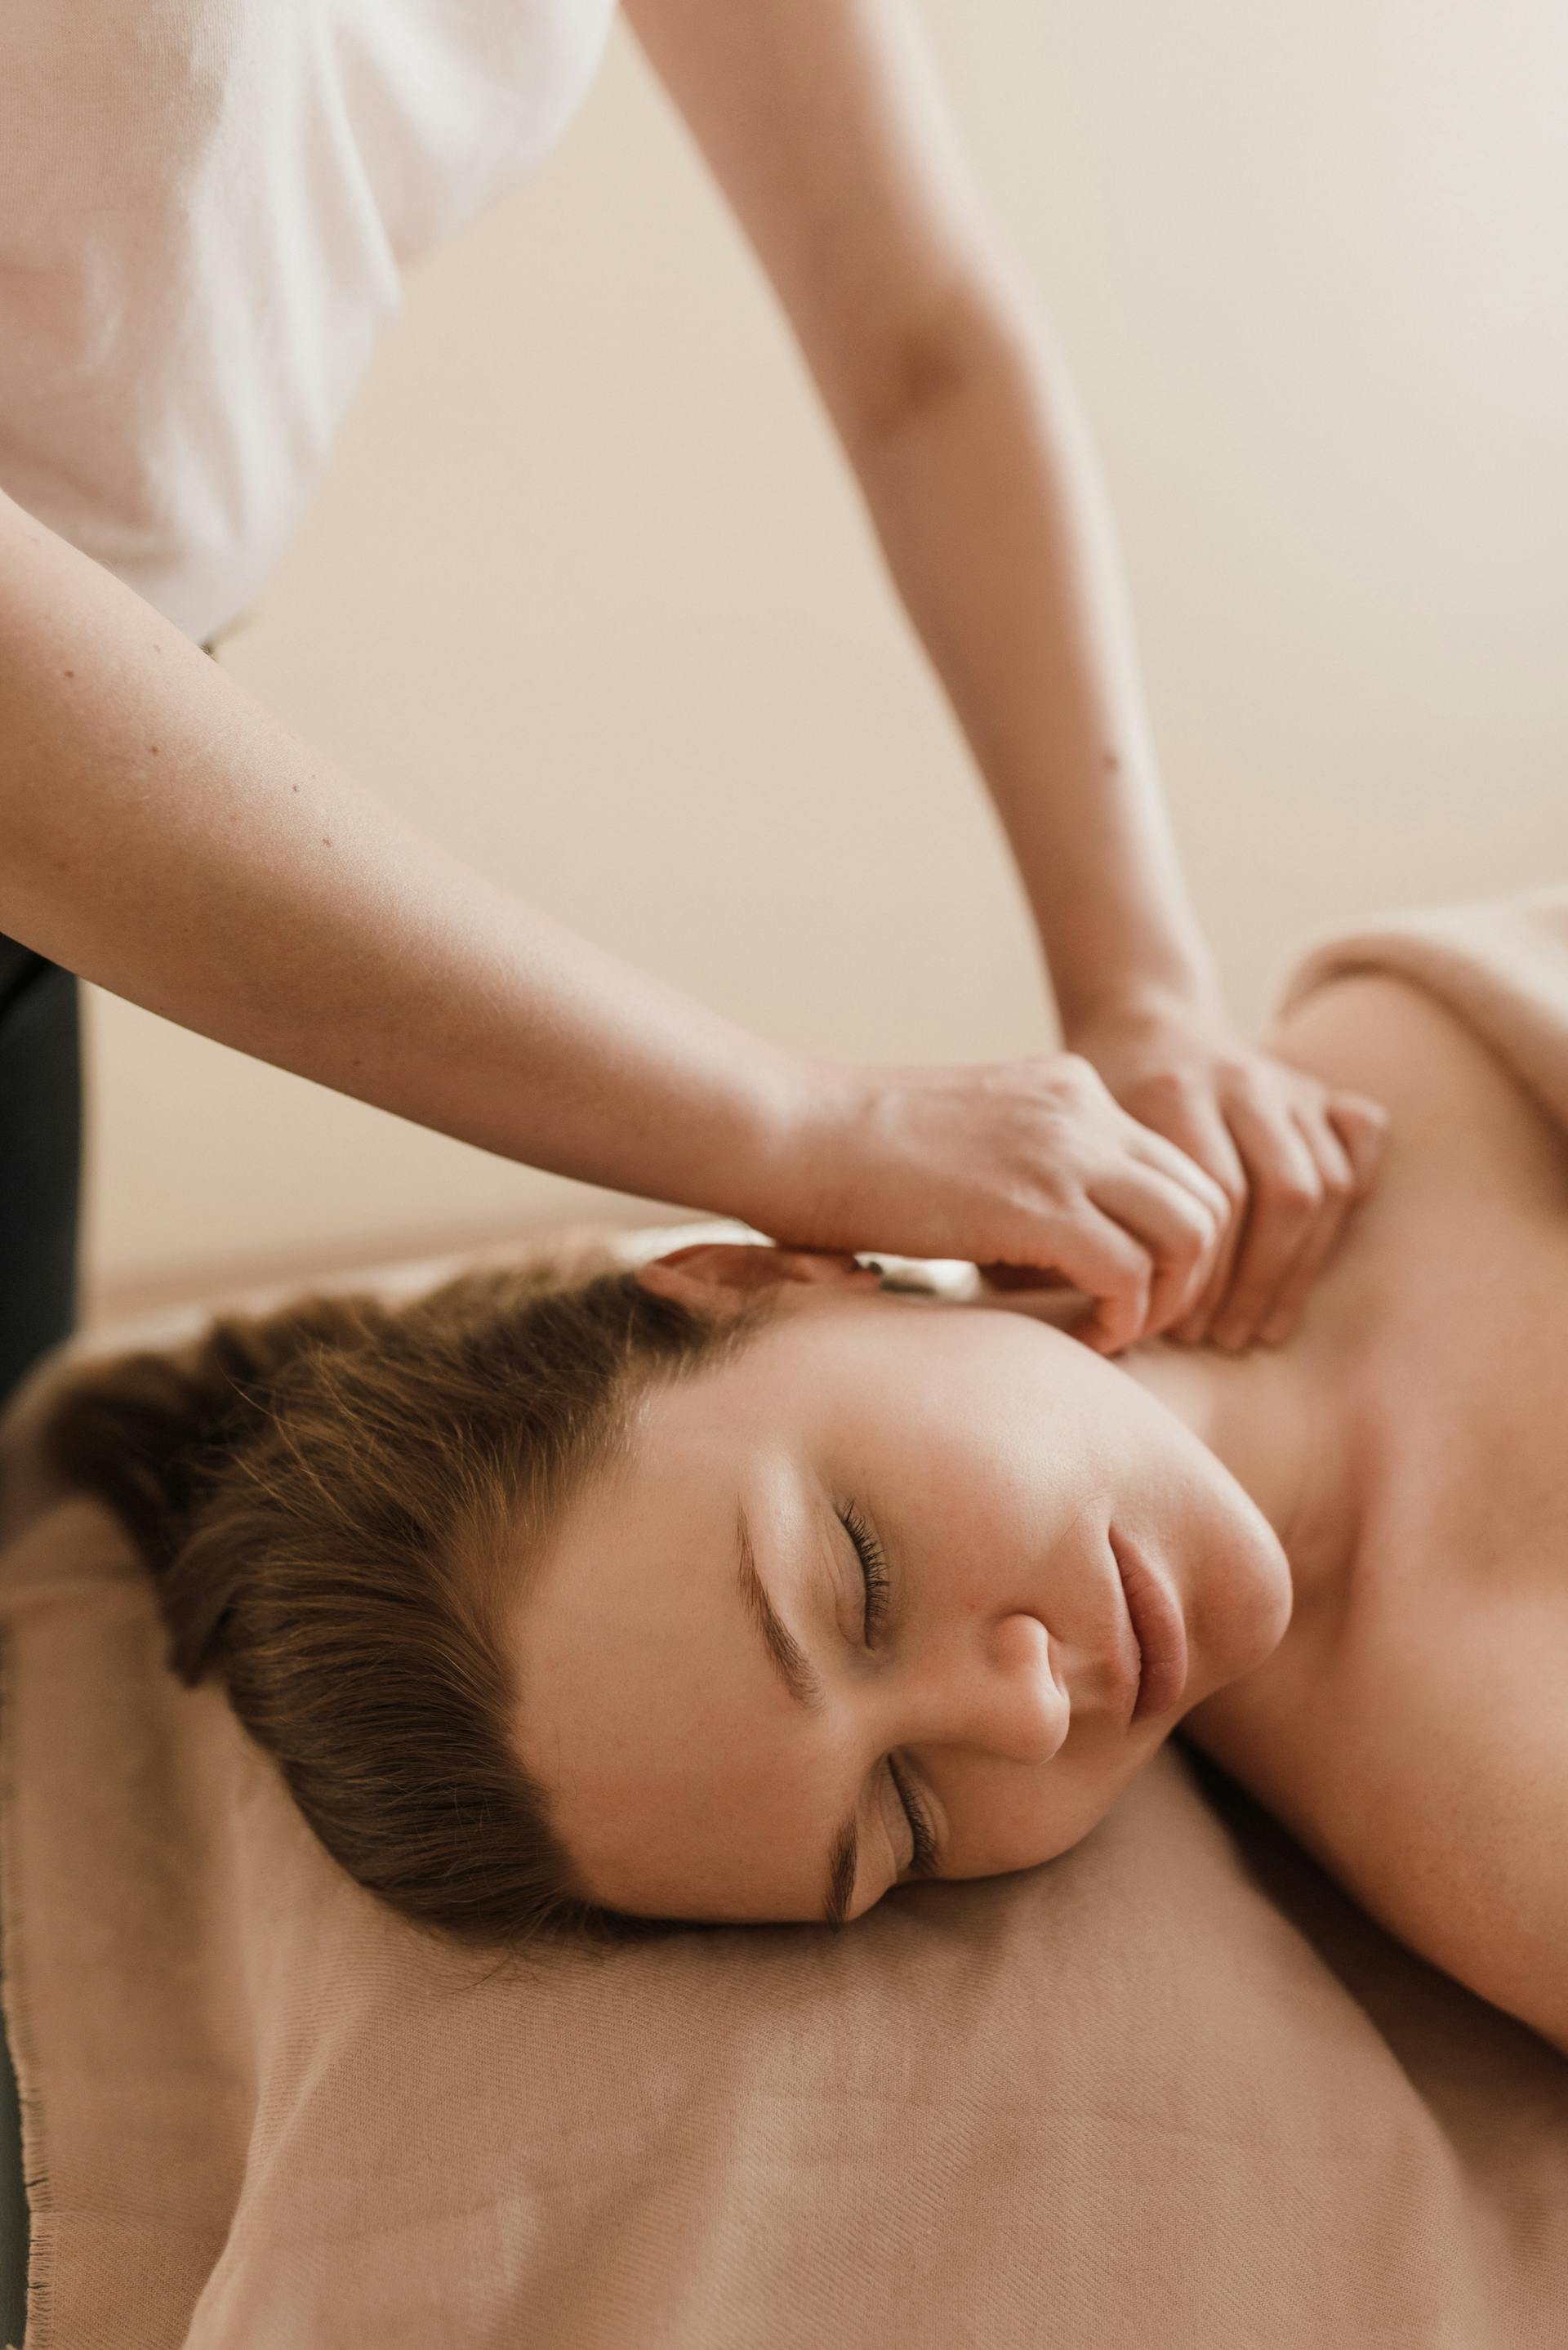 Eine Frau, die eine Massage bekommt | Quelle: Pexels